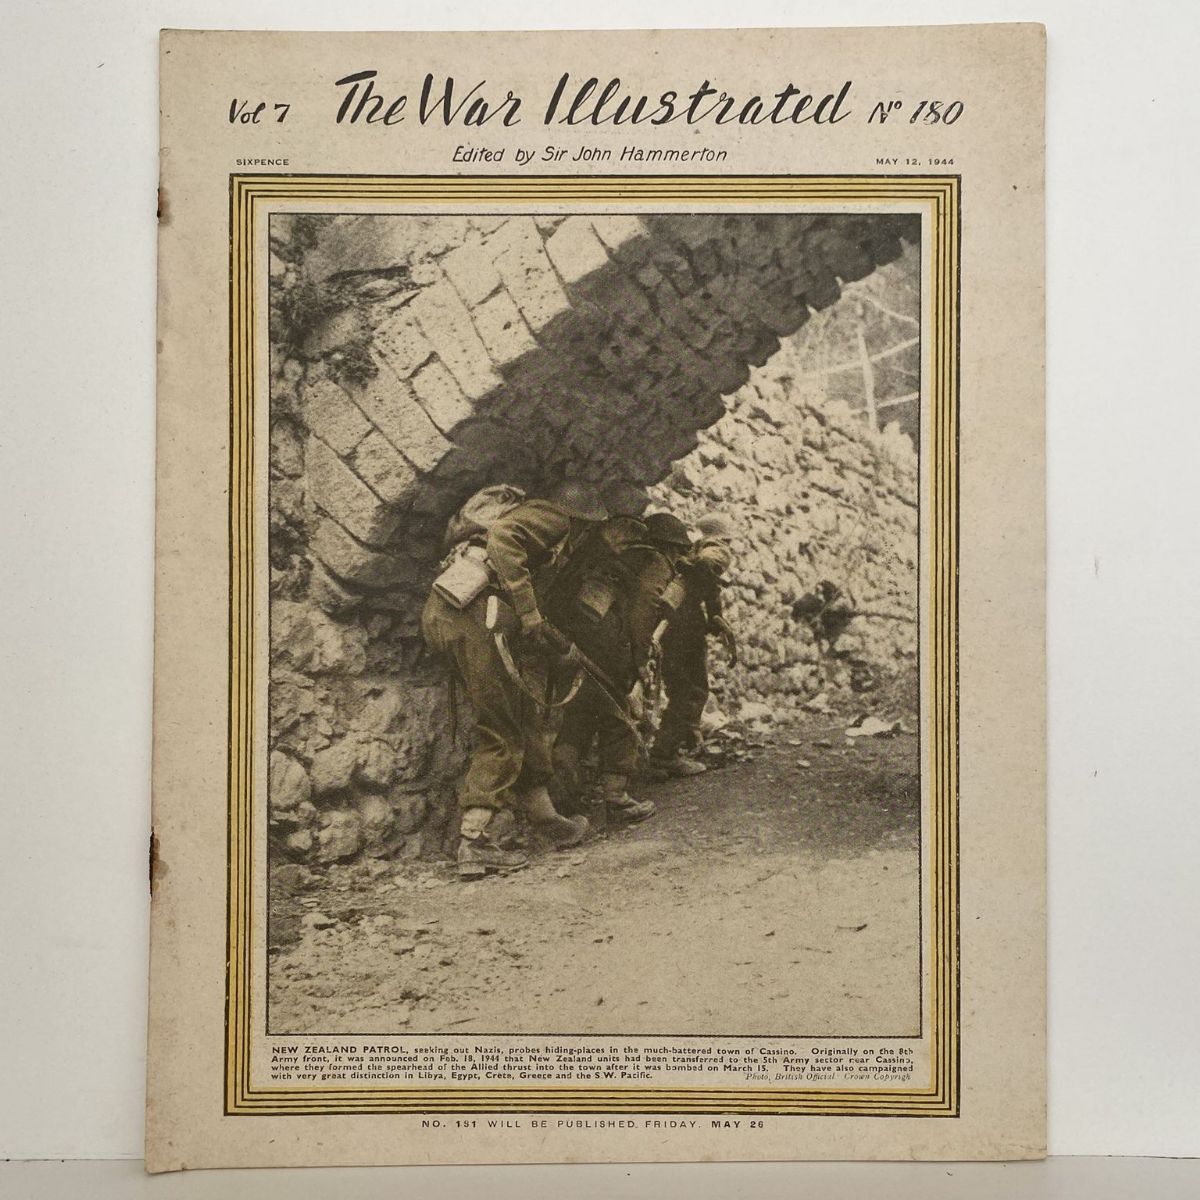 THE WAR ILLUSTRATED - Vol 7, No 180, 12th May 1944